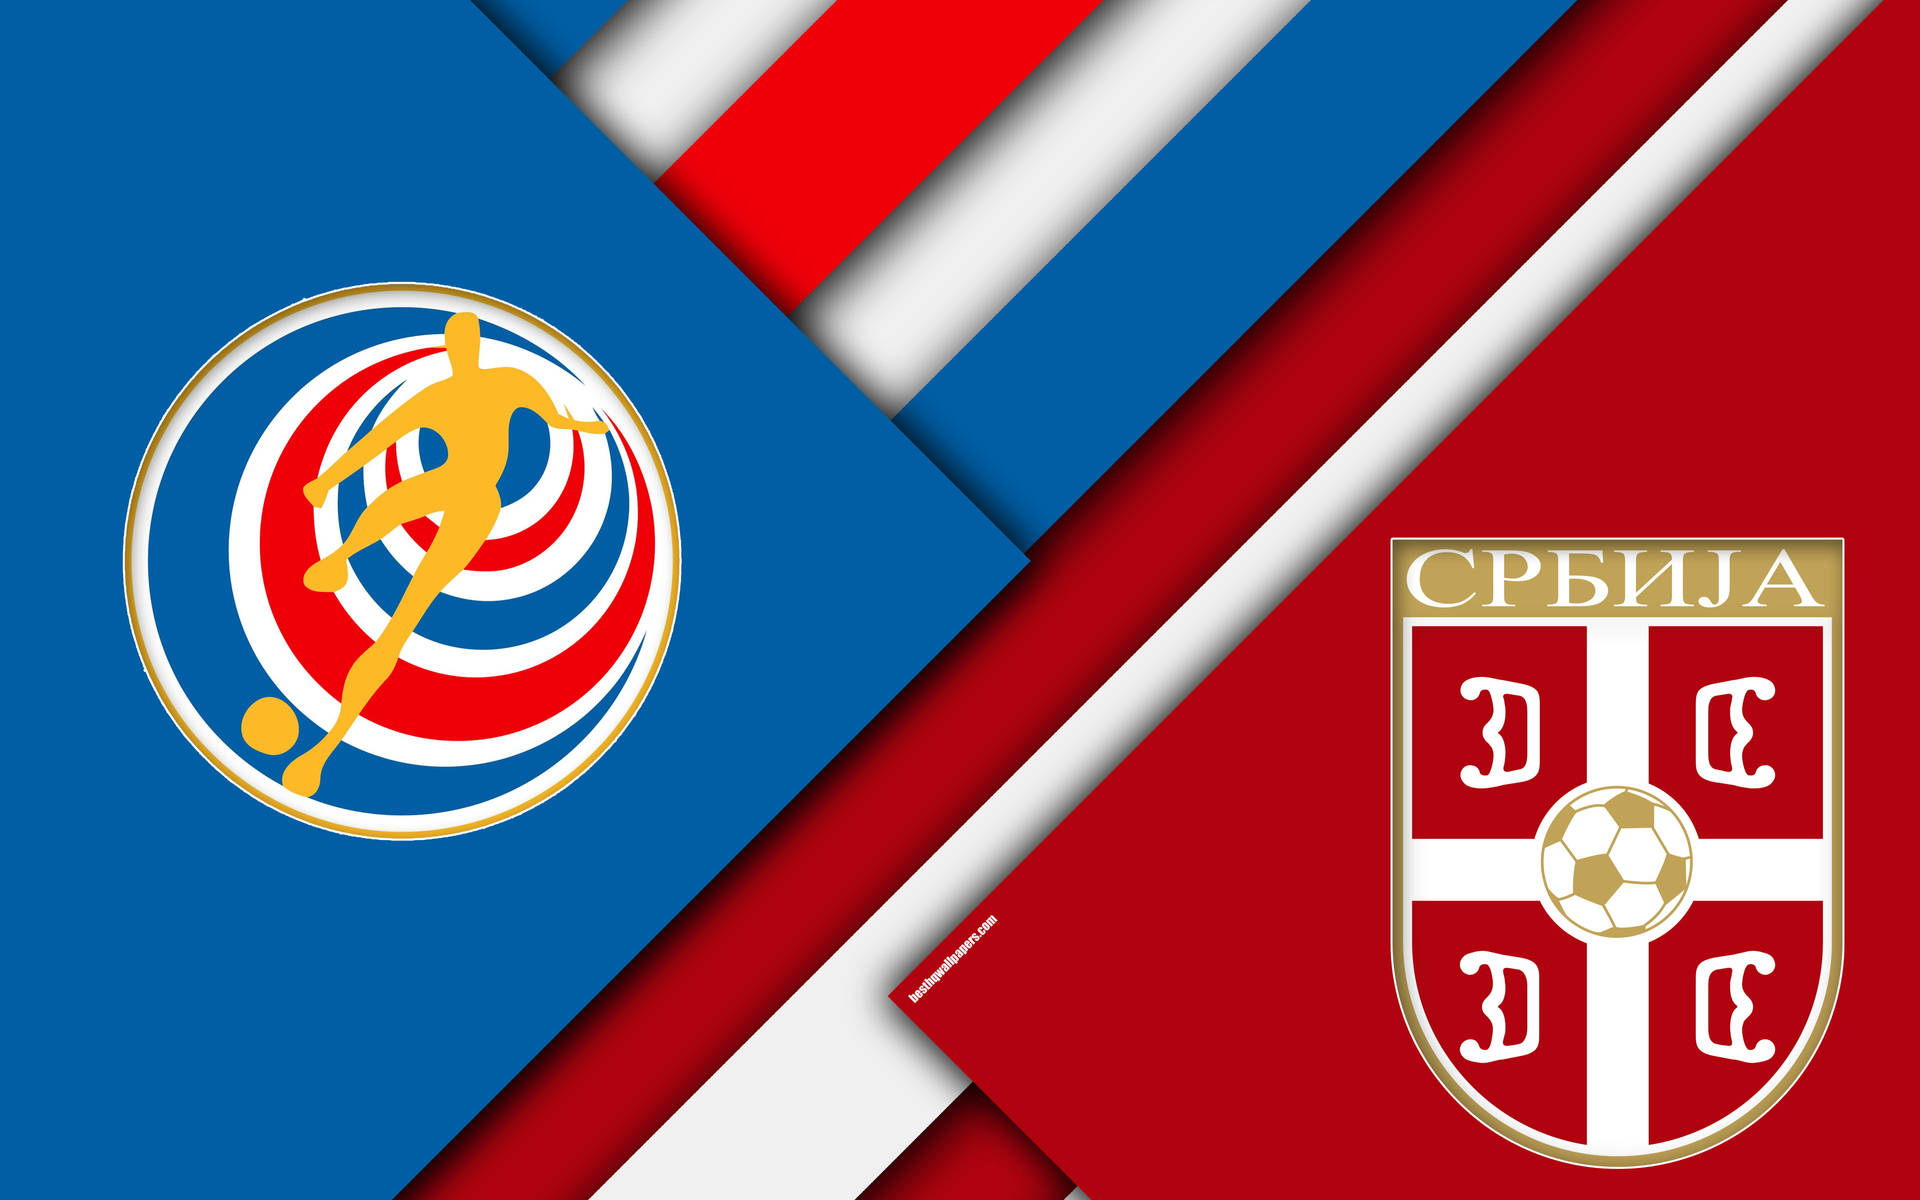 Serbia National Football Team Vs. Costa Rica Nation Football Team Wallpaper